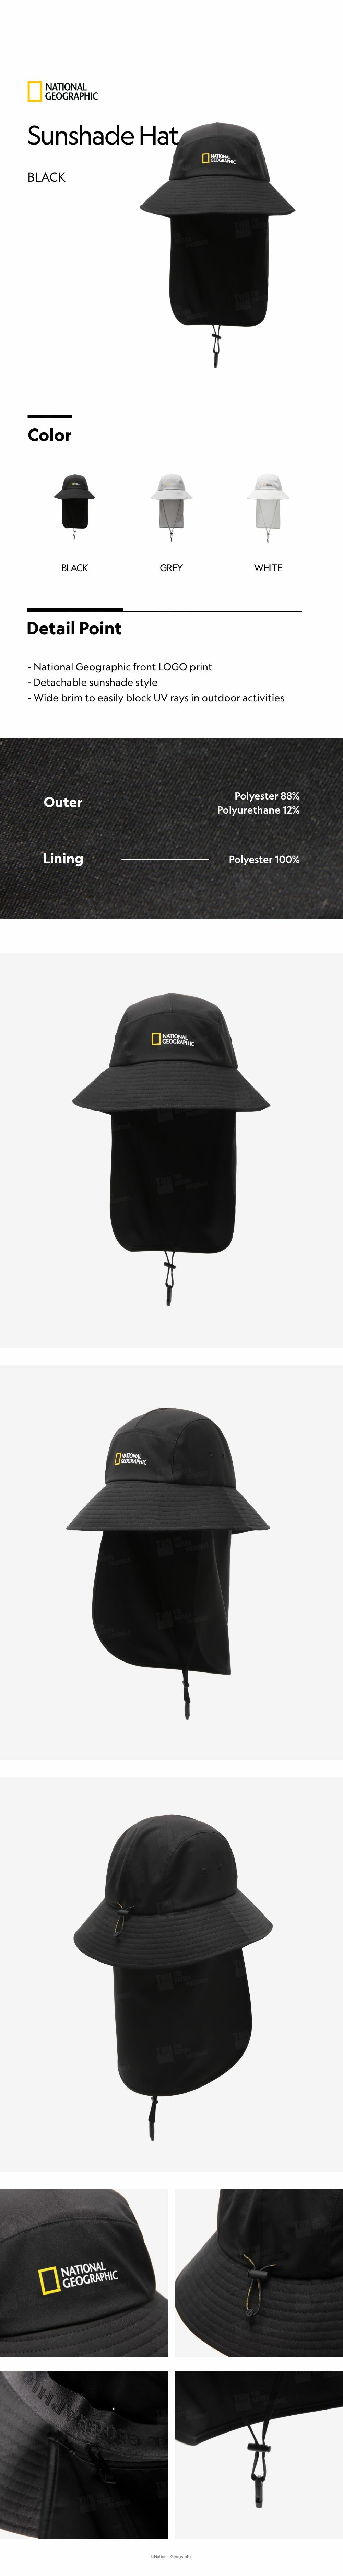 Sunshade Hat - BLACK